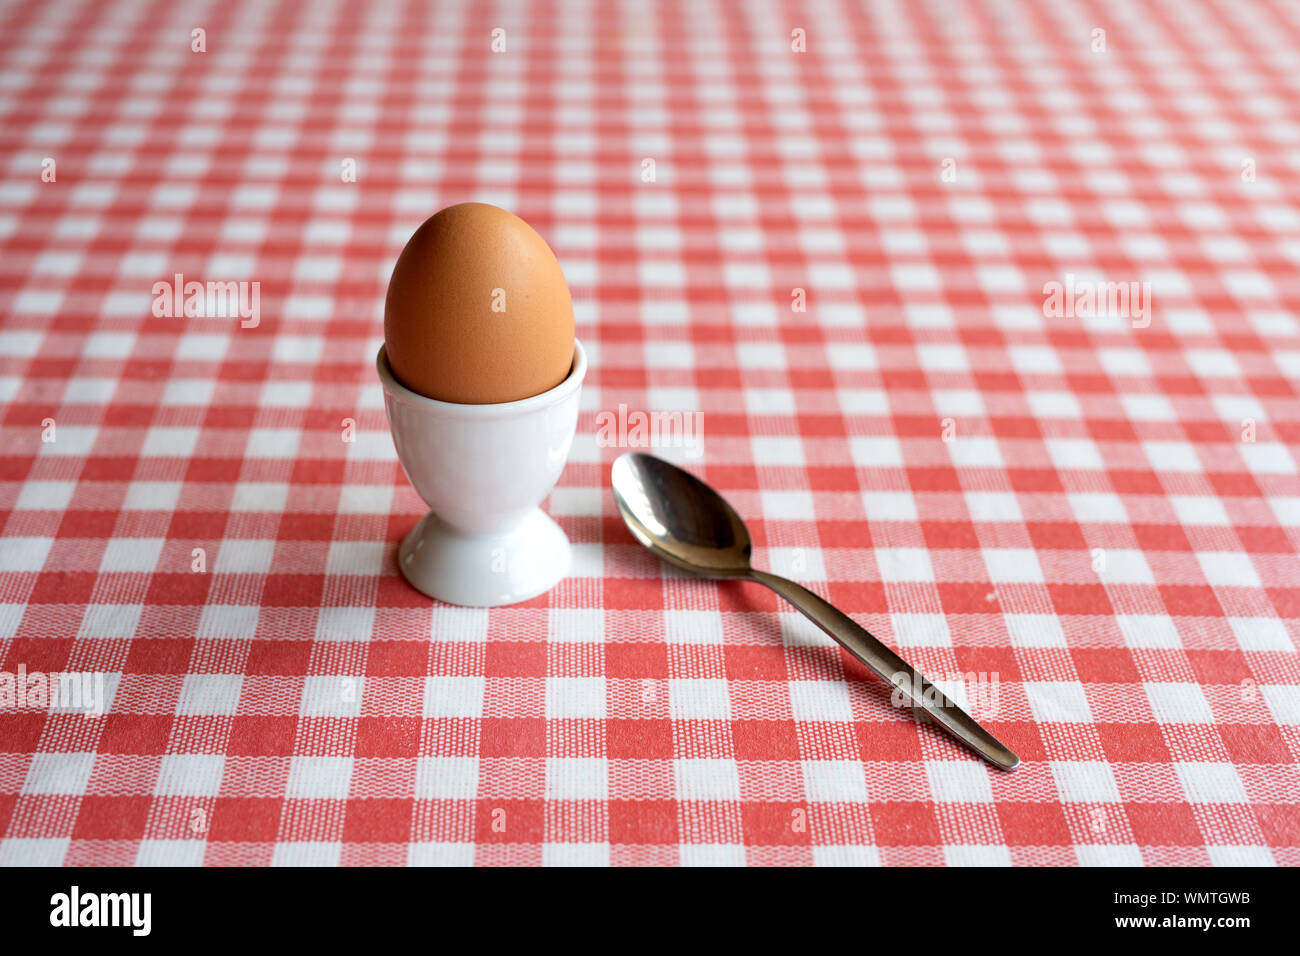 Singolo uovo bollito con cucchiaio pronto a mangiare su un tavolo Foto Stock